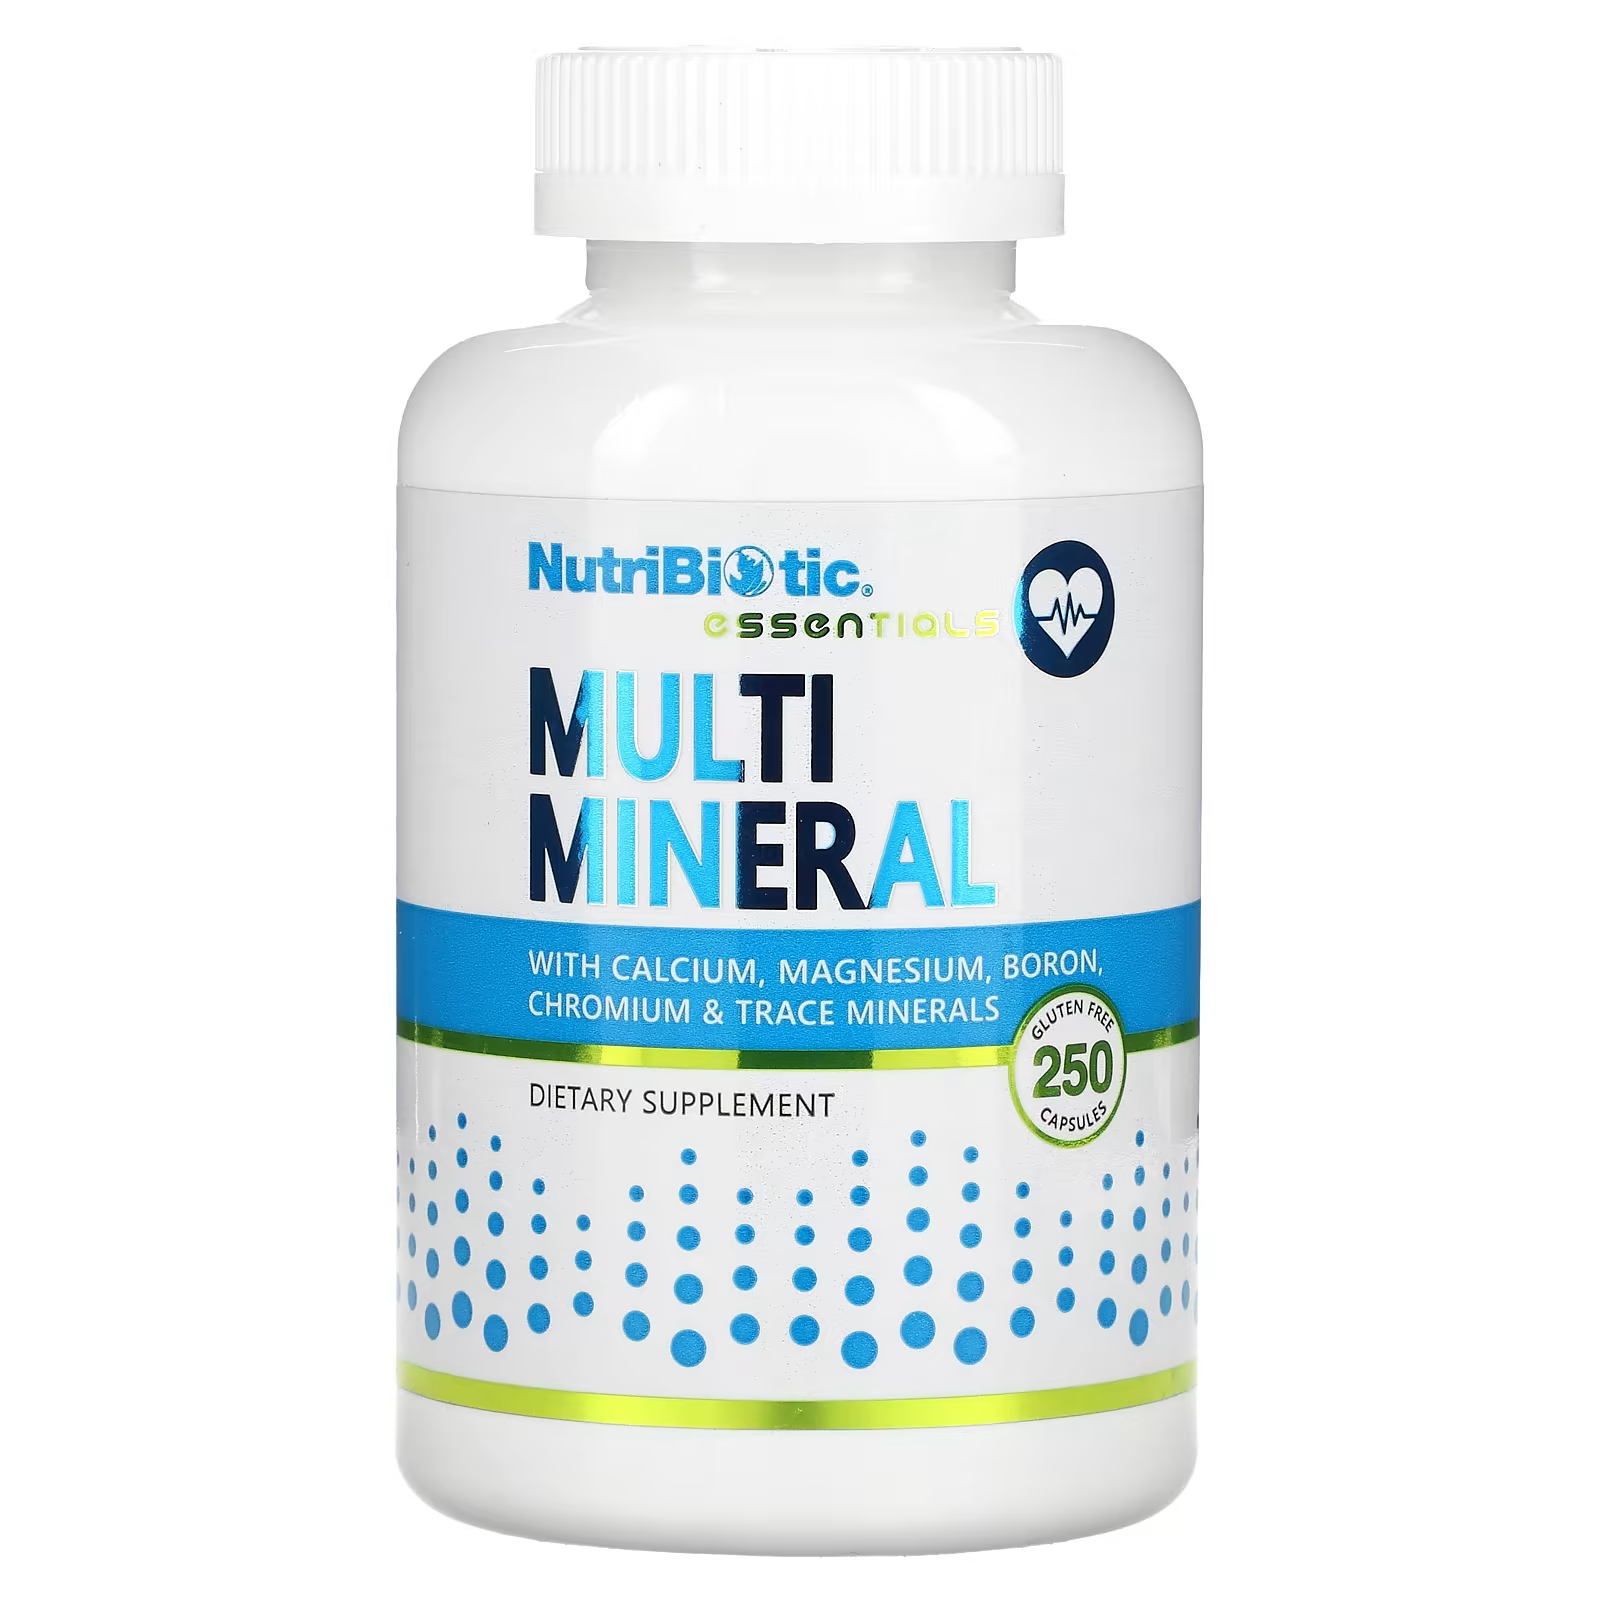 NutriBiotic Essentials Multi Mineral 250 капсул без глютена nutribiotic essentials кальций и магний 250 капсул